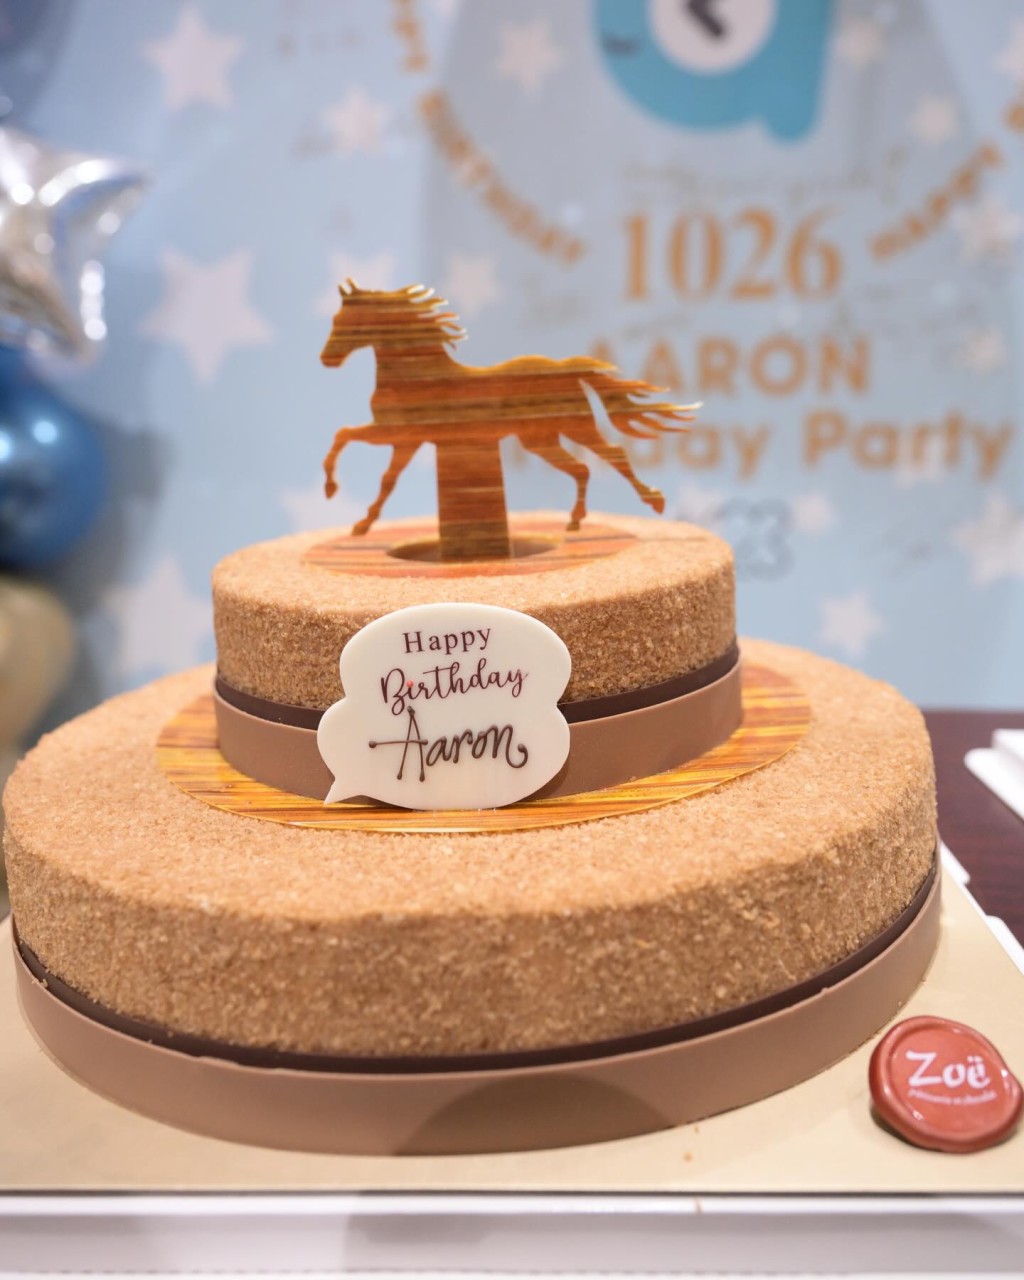 蛋糕以郭富城最愛的馬匹為主題。